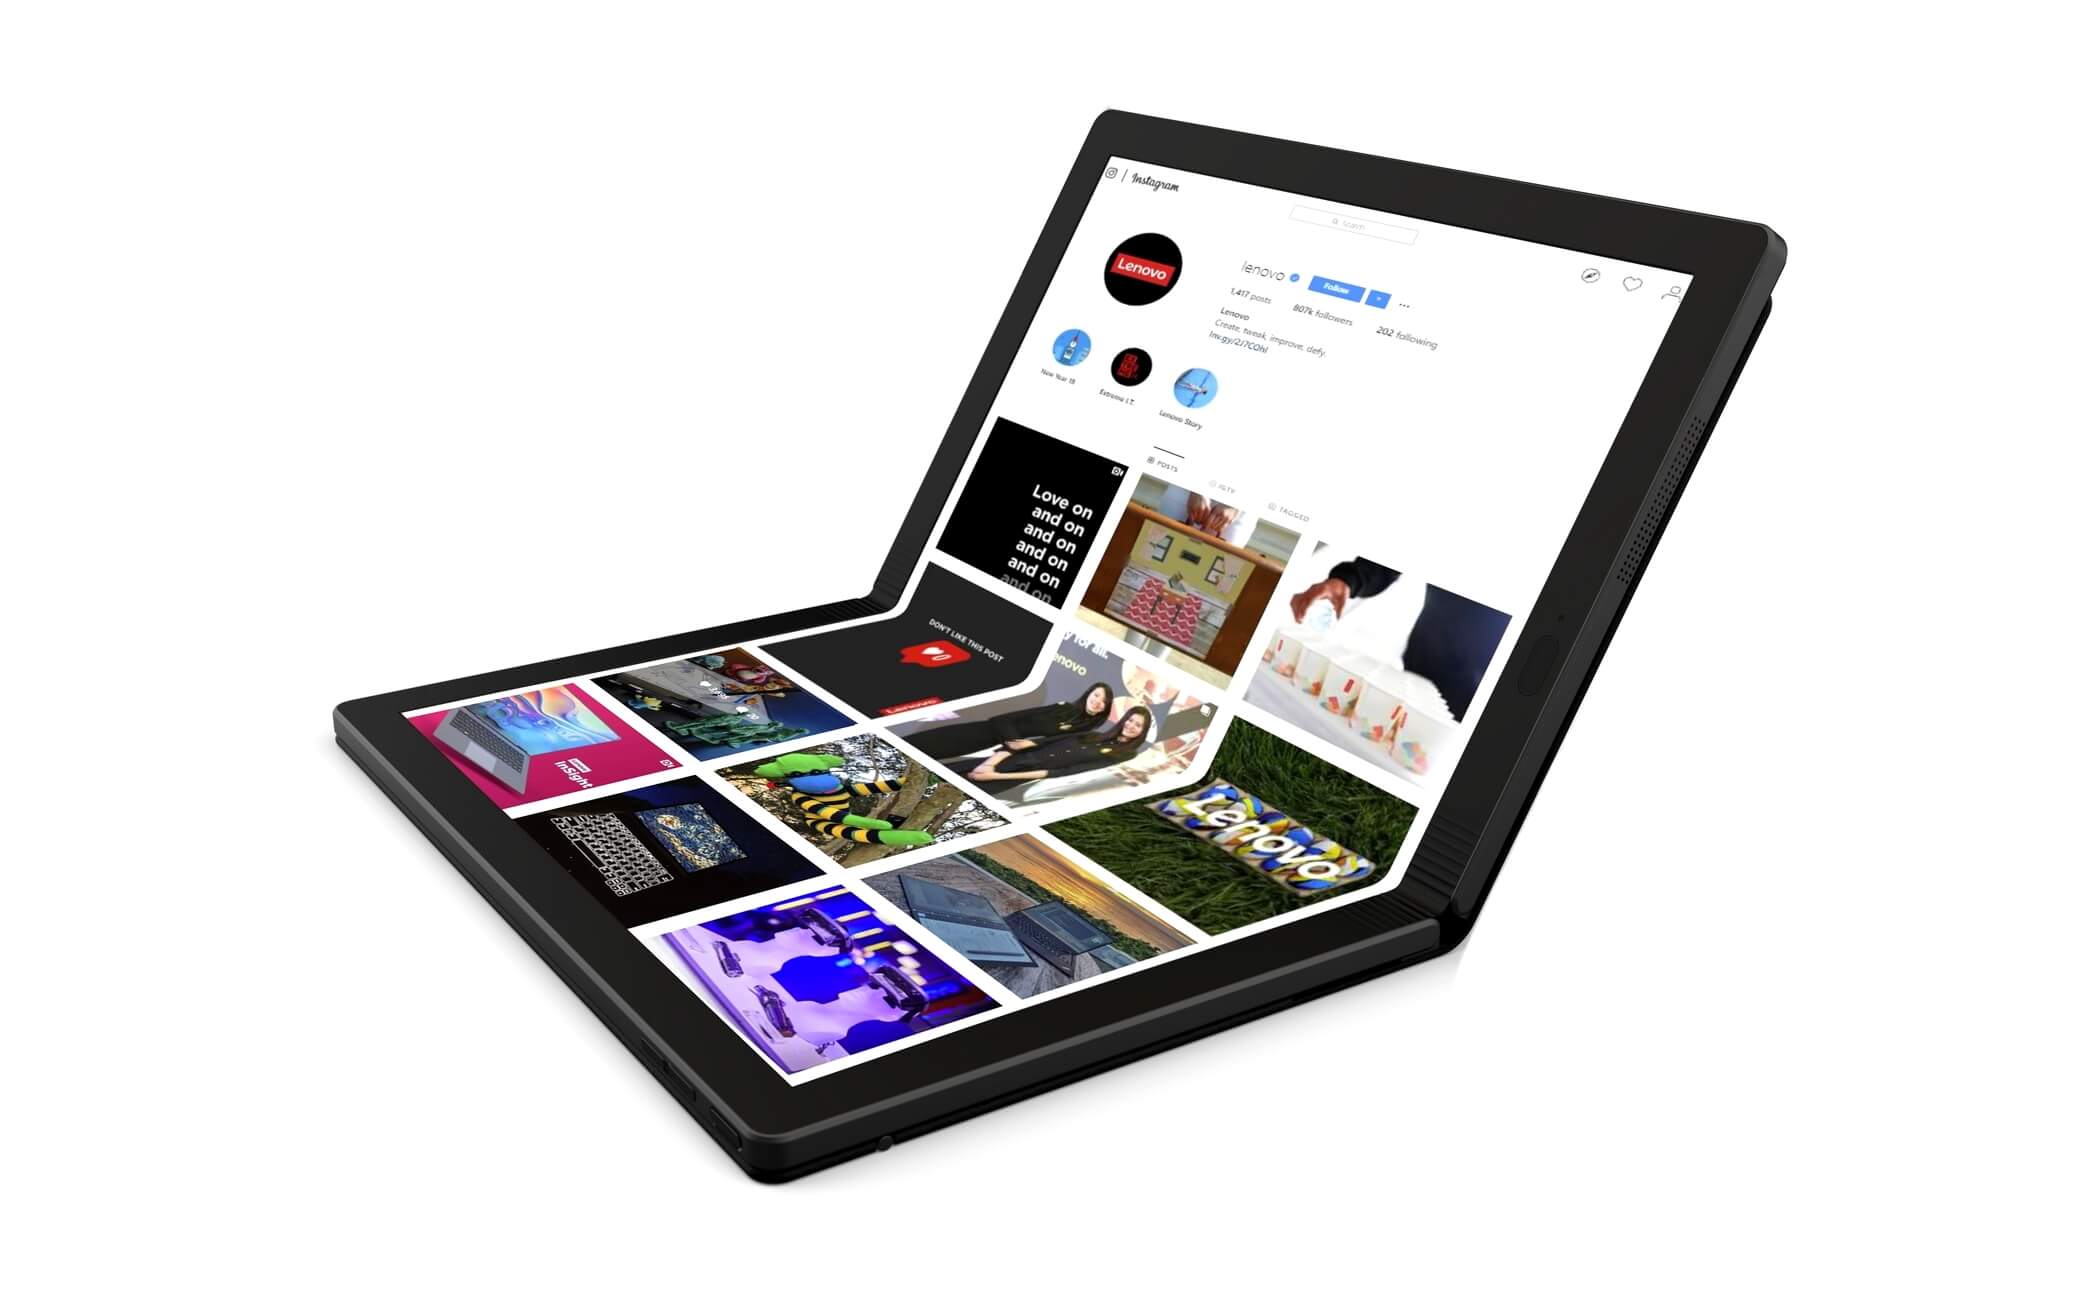 Lenovo показала первый в мире ноутбук с гибким экраном